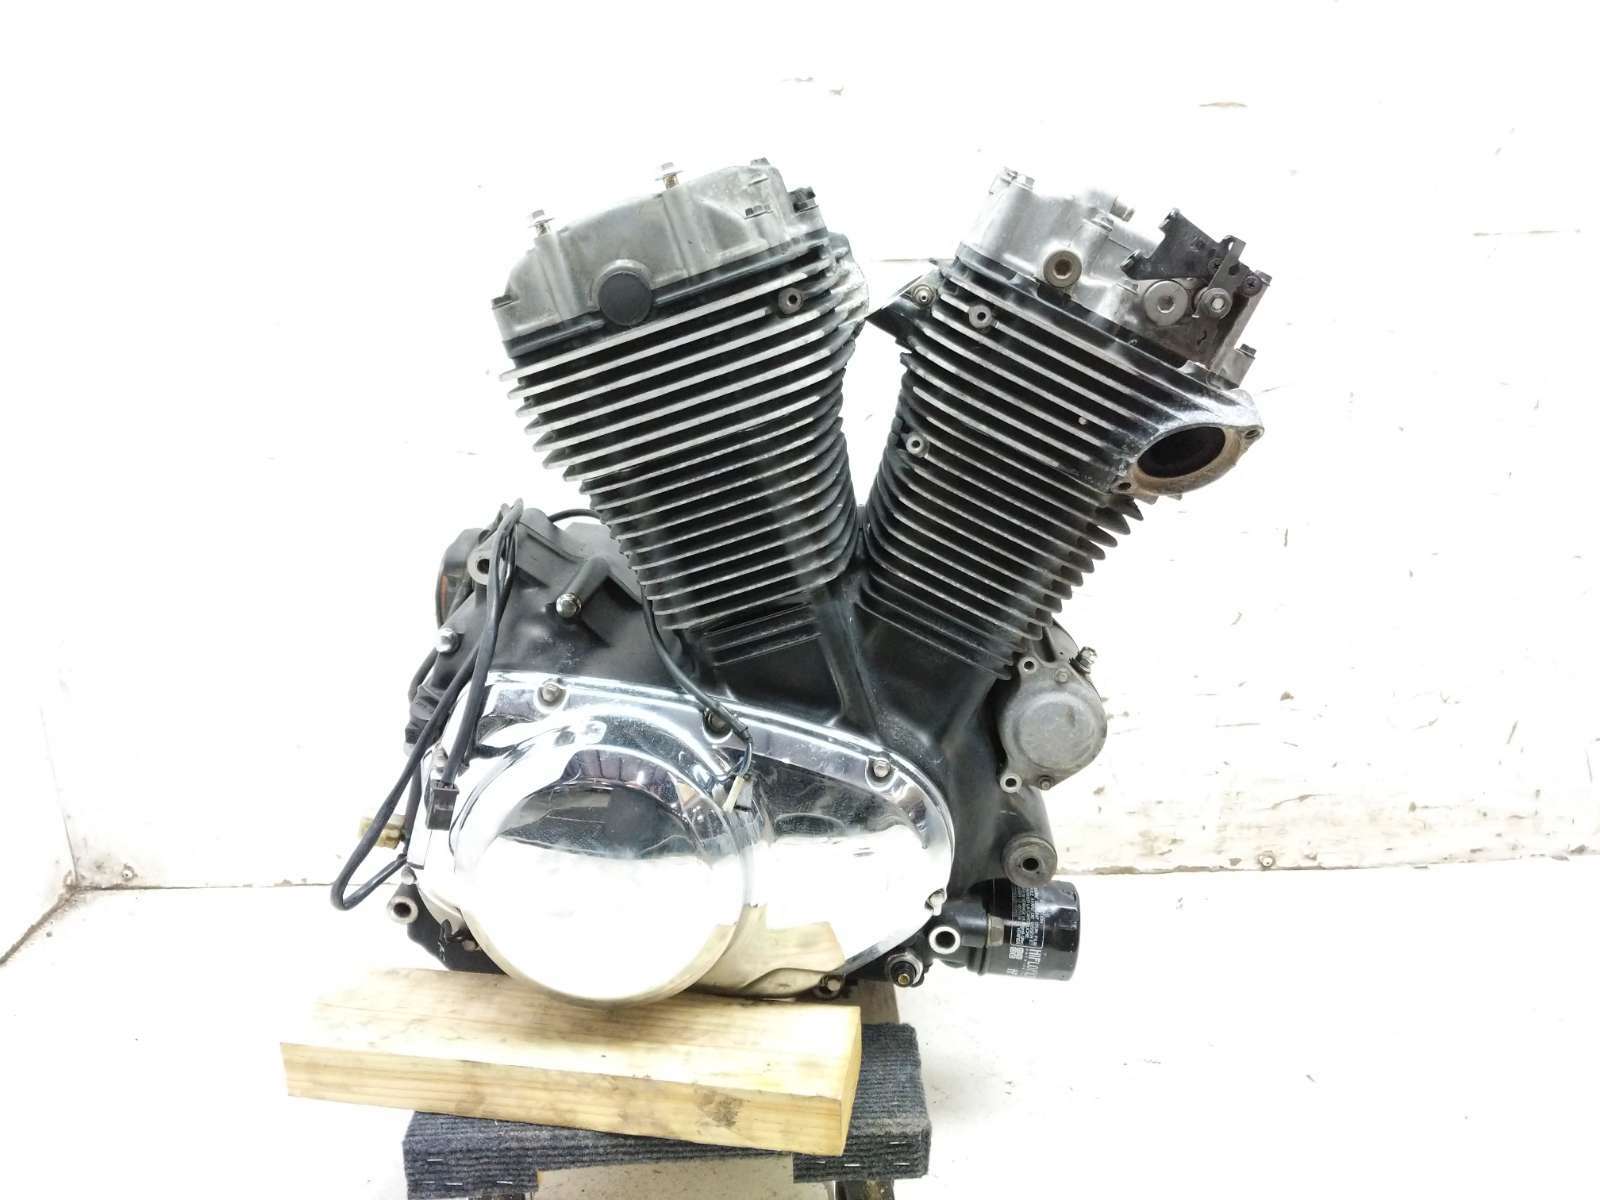 08 Suzuki VS1400 Intruder S83 Engine Motor